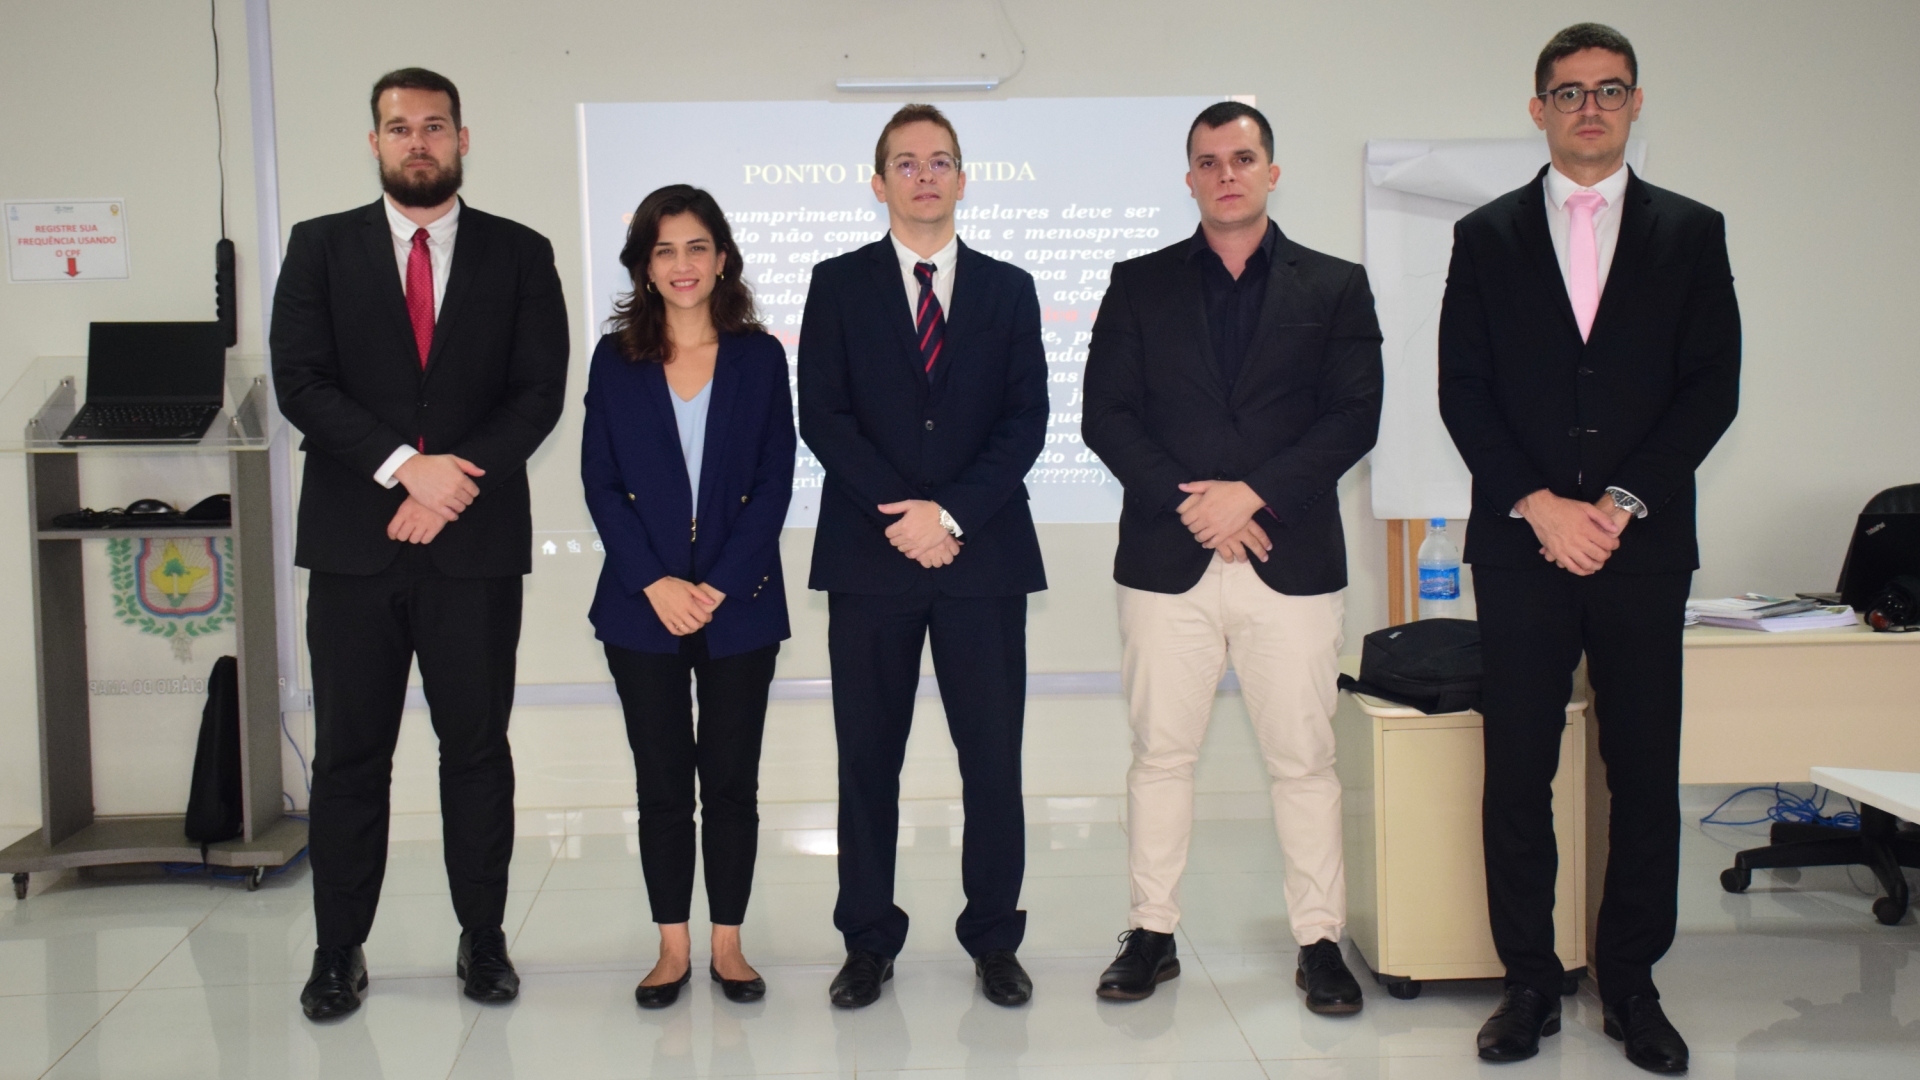  Juiz Diogo Moura de Araújo e mais quatro novos Juízes em pé posando para a foto em uma sala de aula e ao fundo um Datashow apresentado.